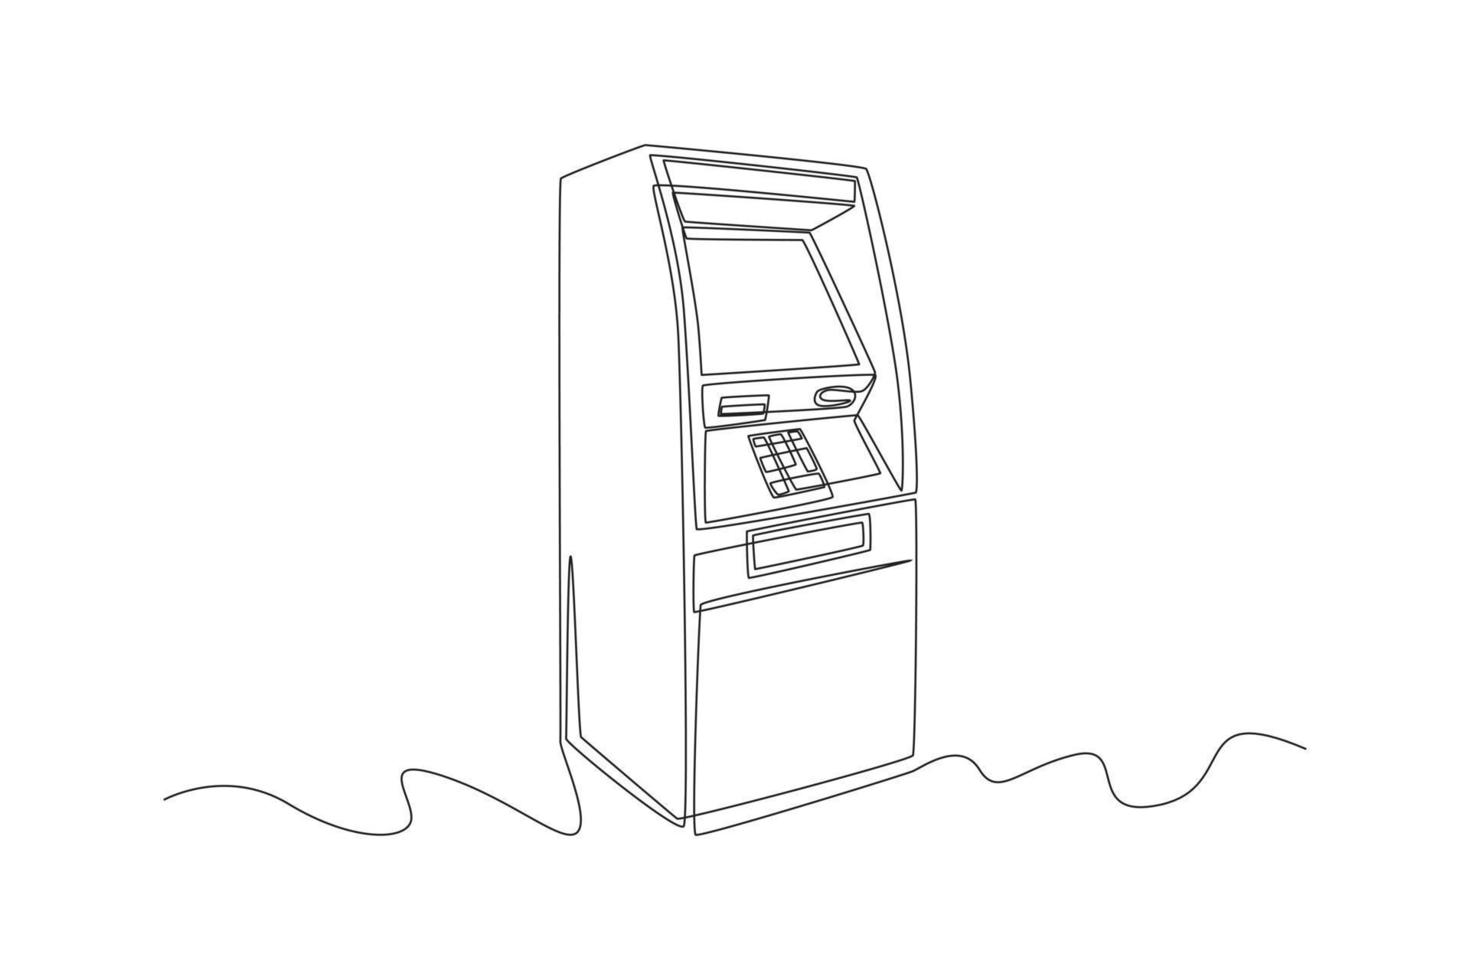 Kontinuierliche einzeilige Zeichnung atm für Transaktionen und Geld sparen. Geldautomat. Geldautomatenkonzept. einzeiliges zeichnen design vektorgrafik illustration. vektor